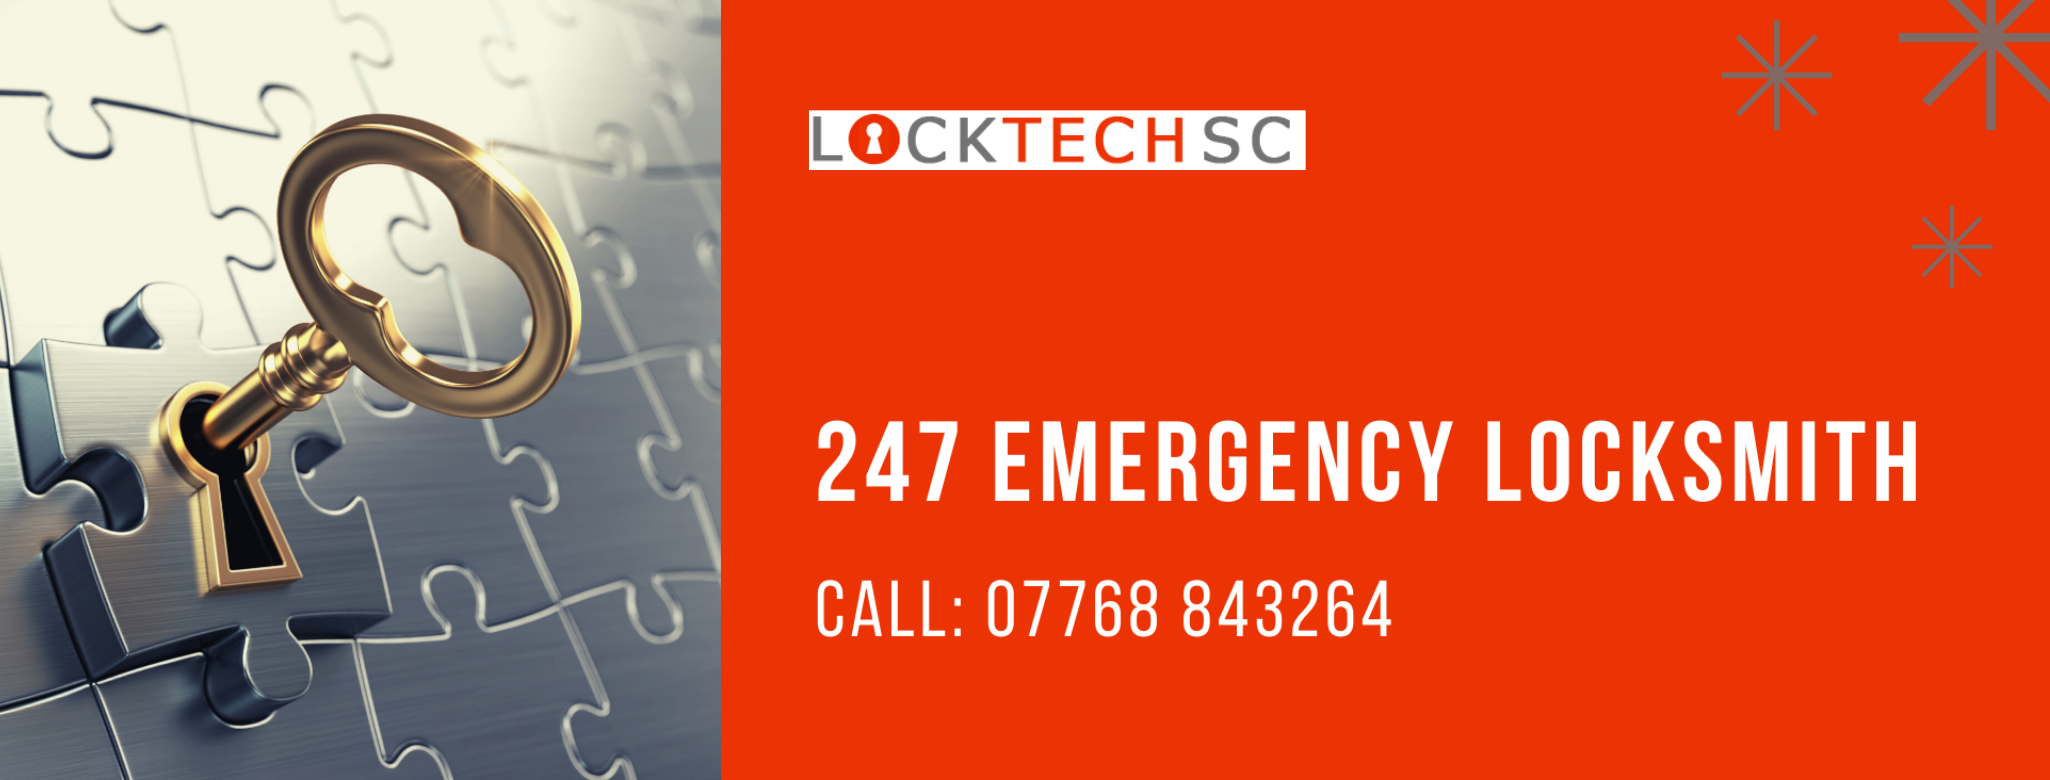 Logo of Locktech SC - Locksmith in Chesham